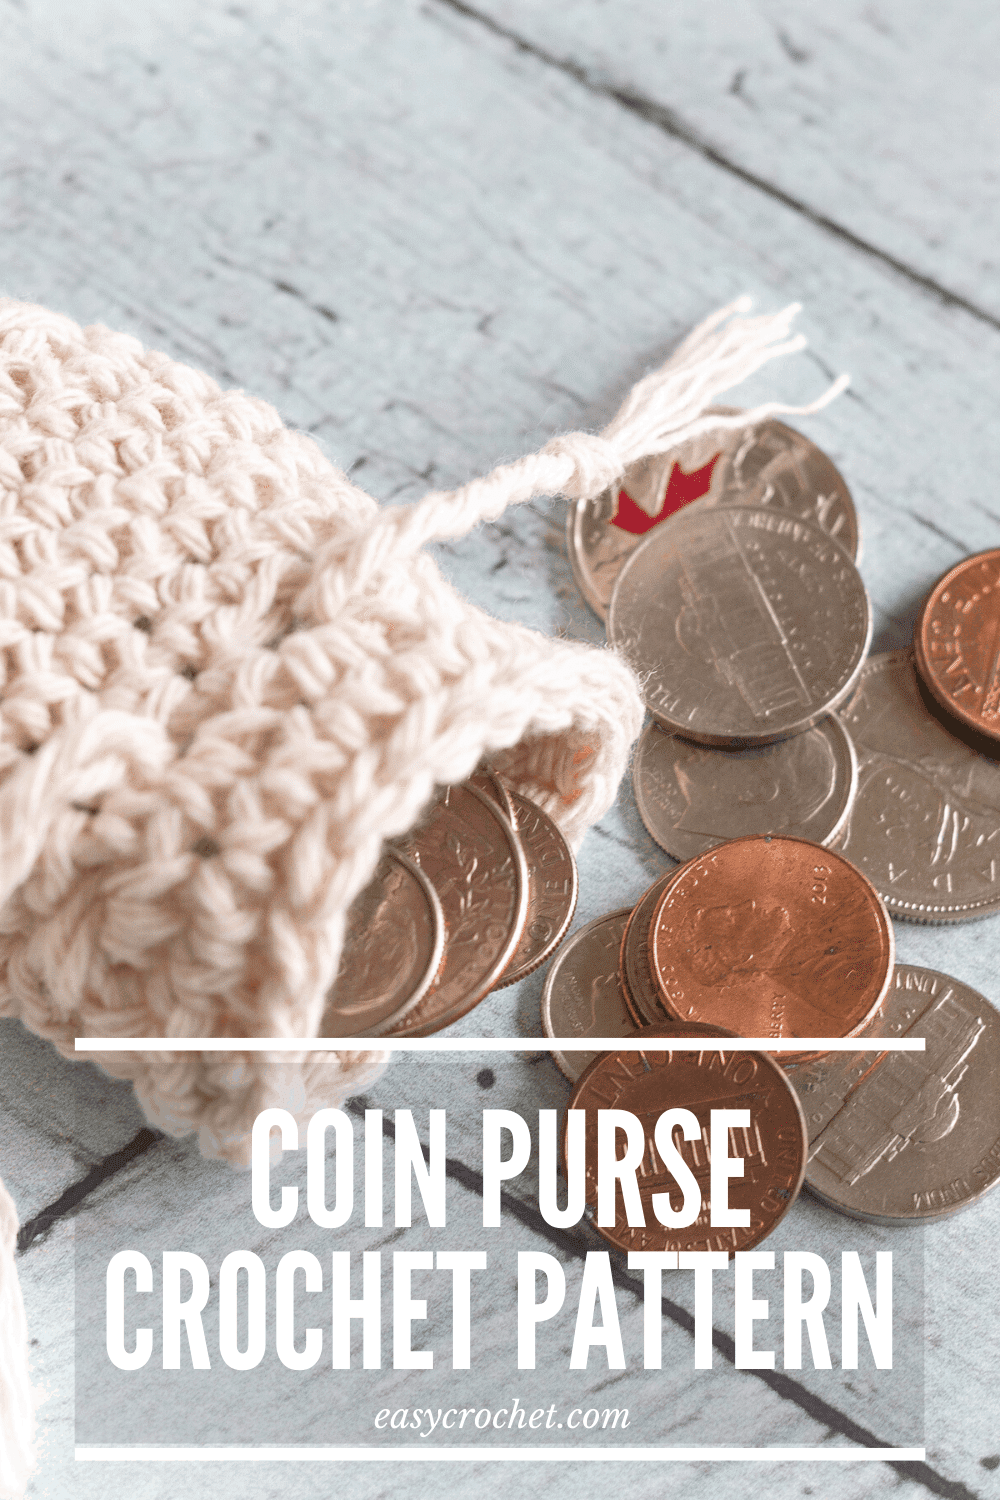 Crochet Coin Purse Pattern - Learn to crochet this coin purse with our free crochet pattern. via @easycrochetcom